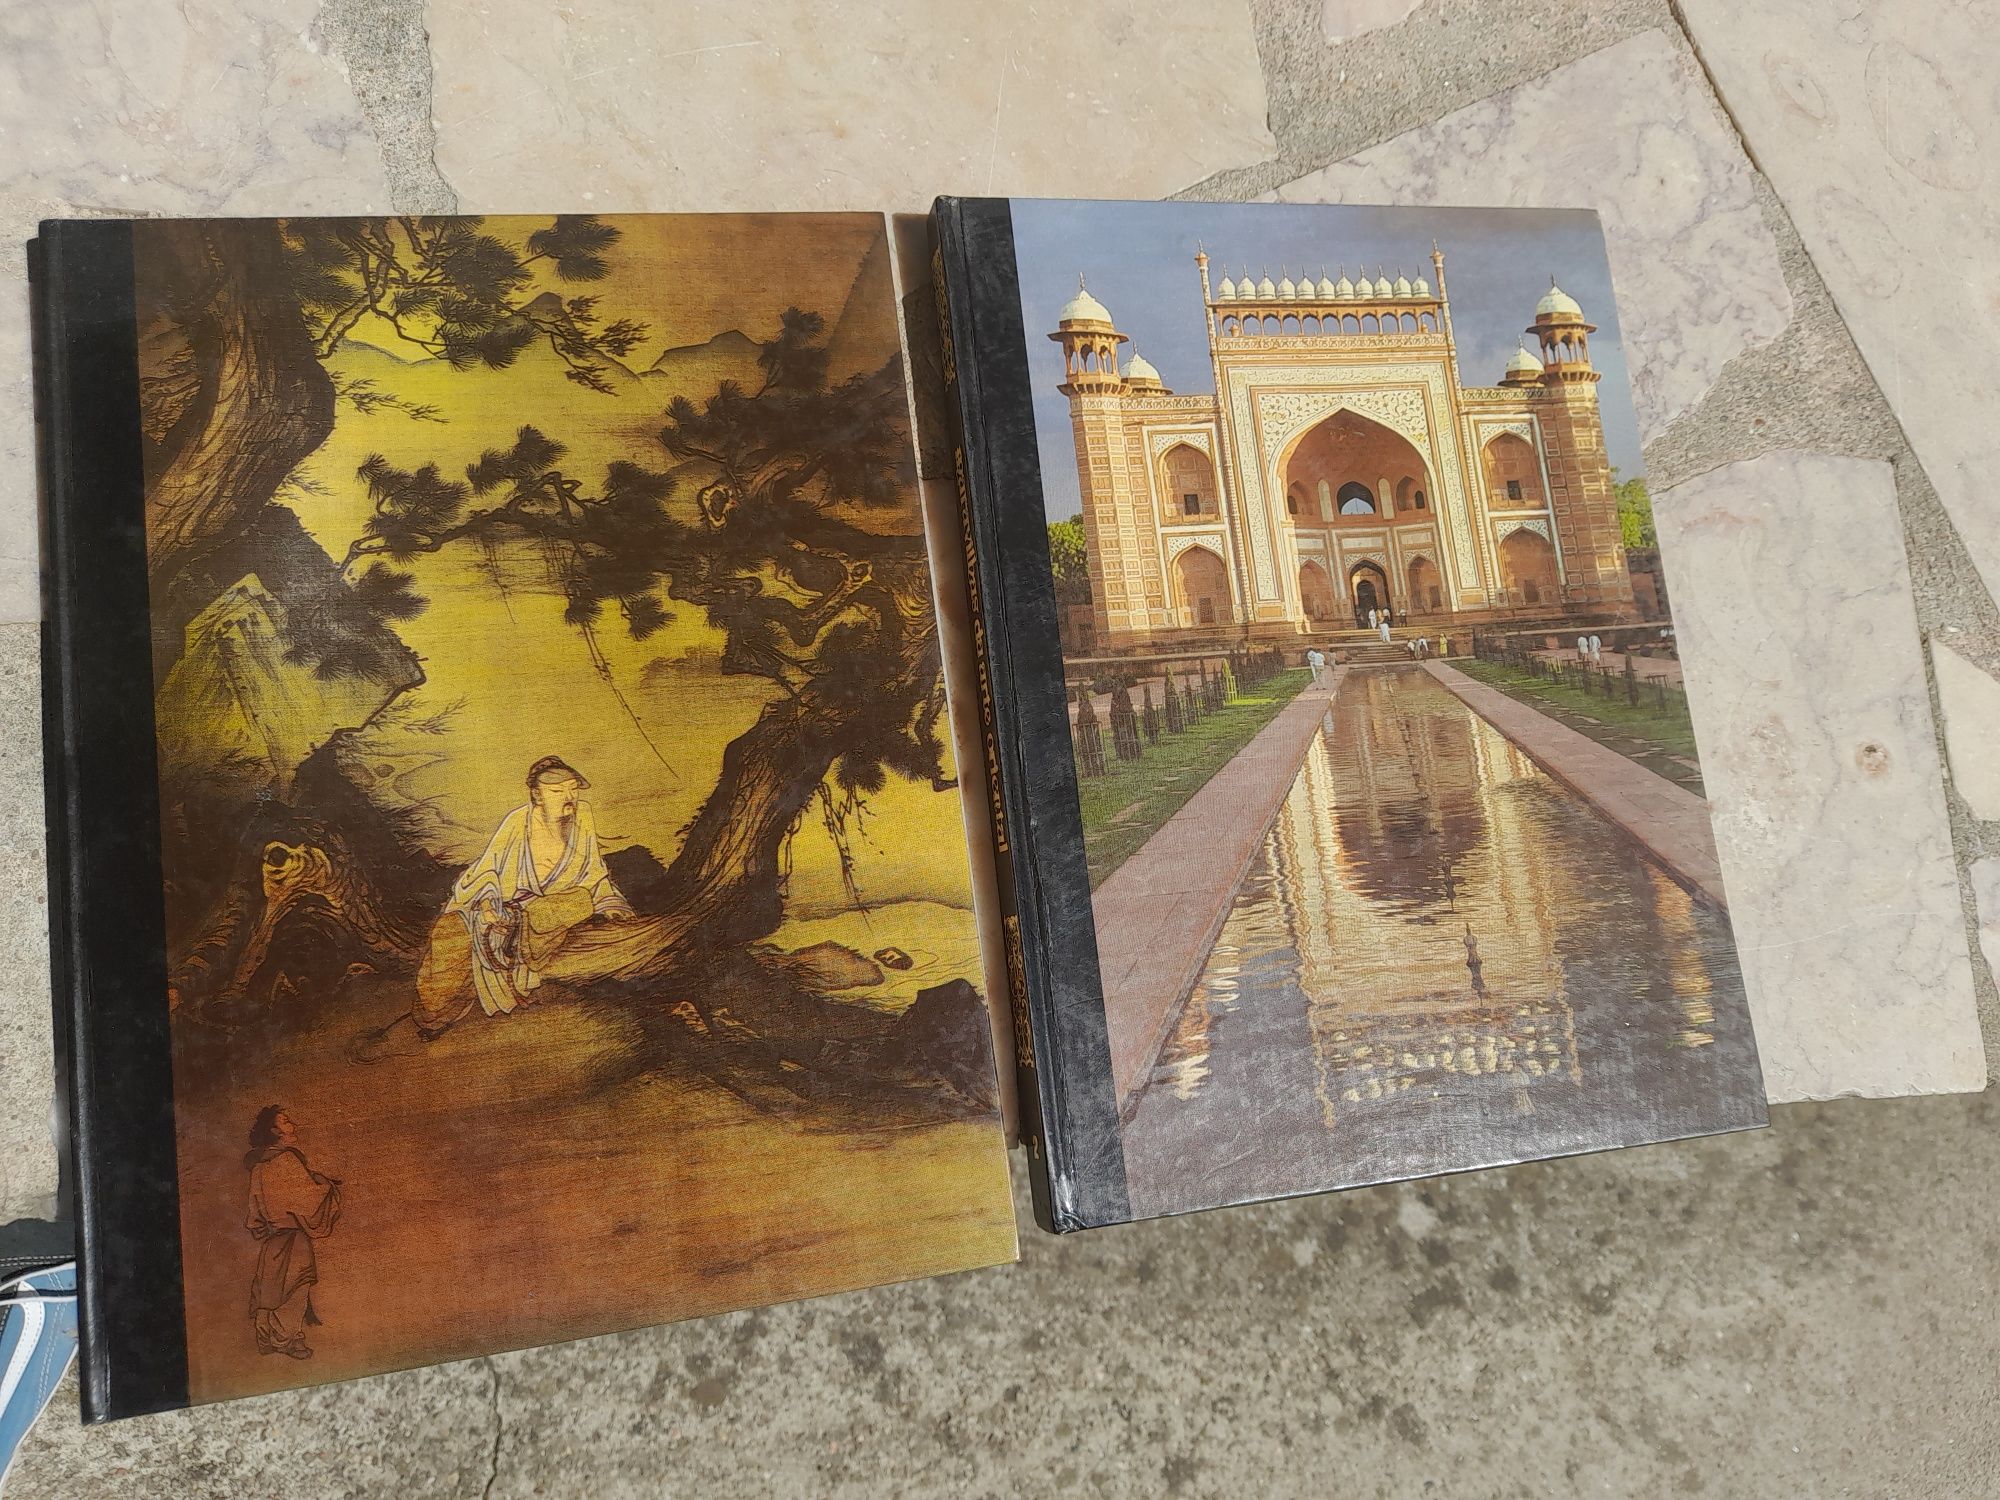 Livros "Maravilhas da Arte Oriental"